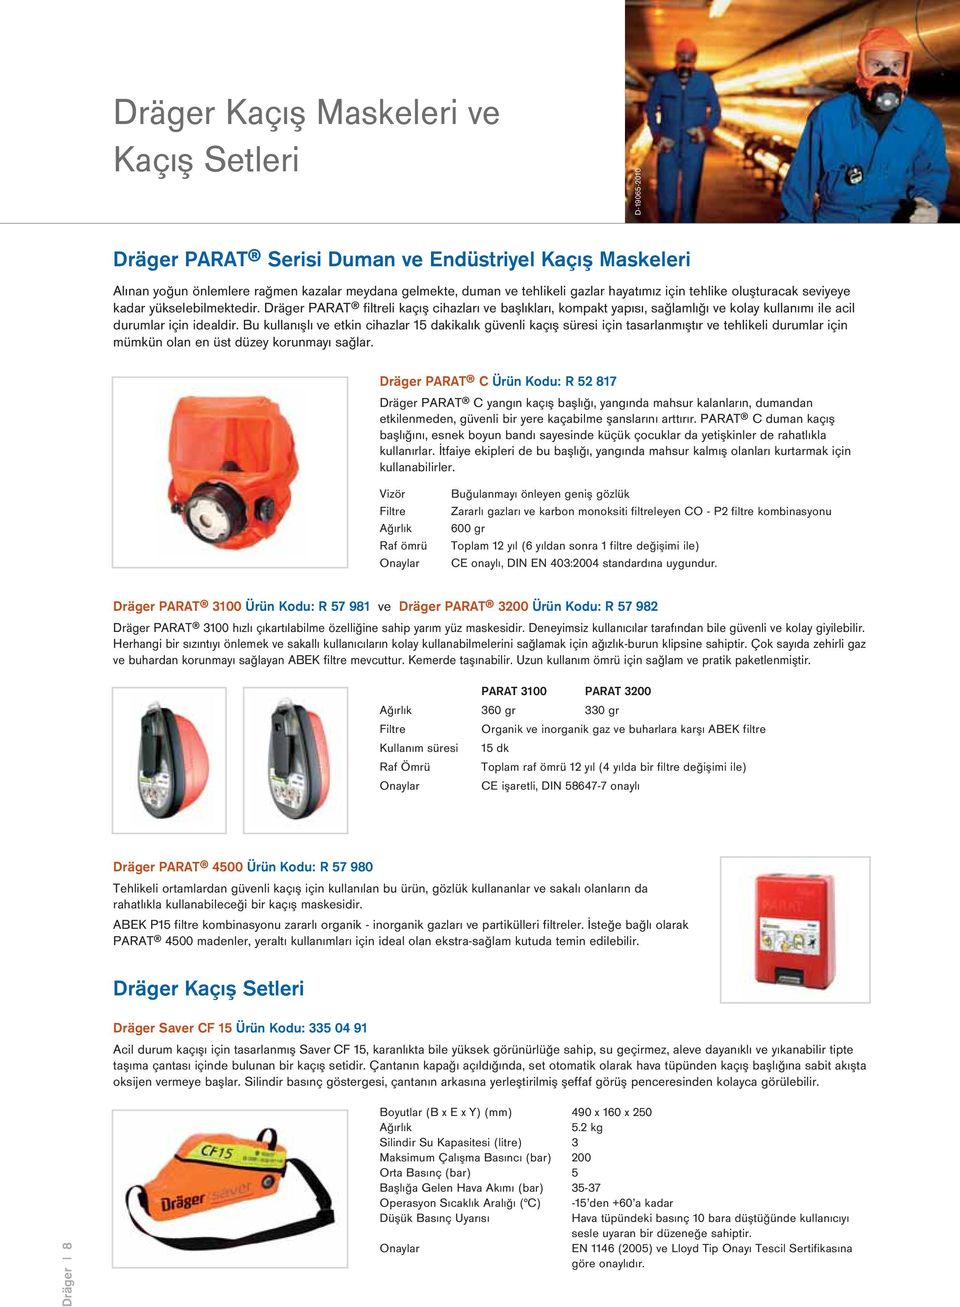 Dräger PARAT filtreli kaçış cihazları ve başlıkları, kompakt yapısı, sağlamlığı ve kolay kullanımı ile acil durumlar için idealdir.